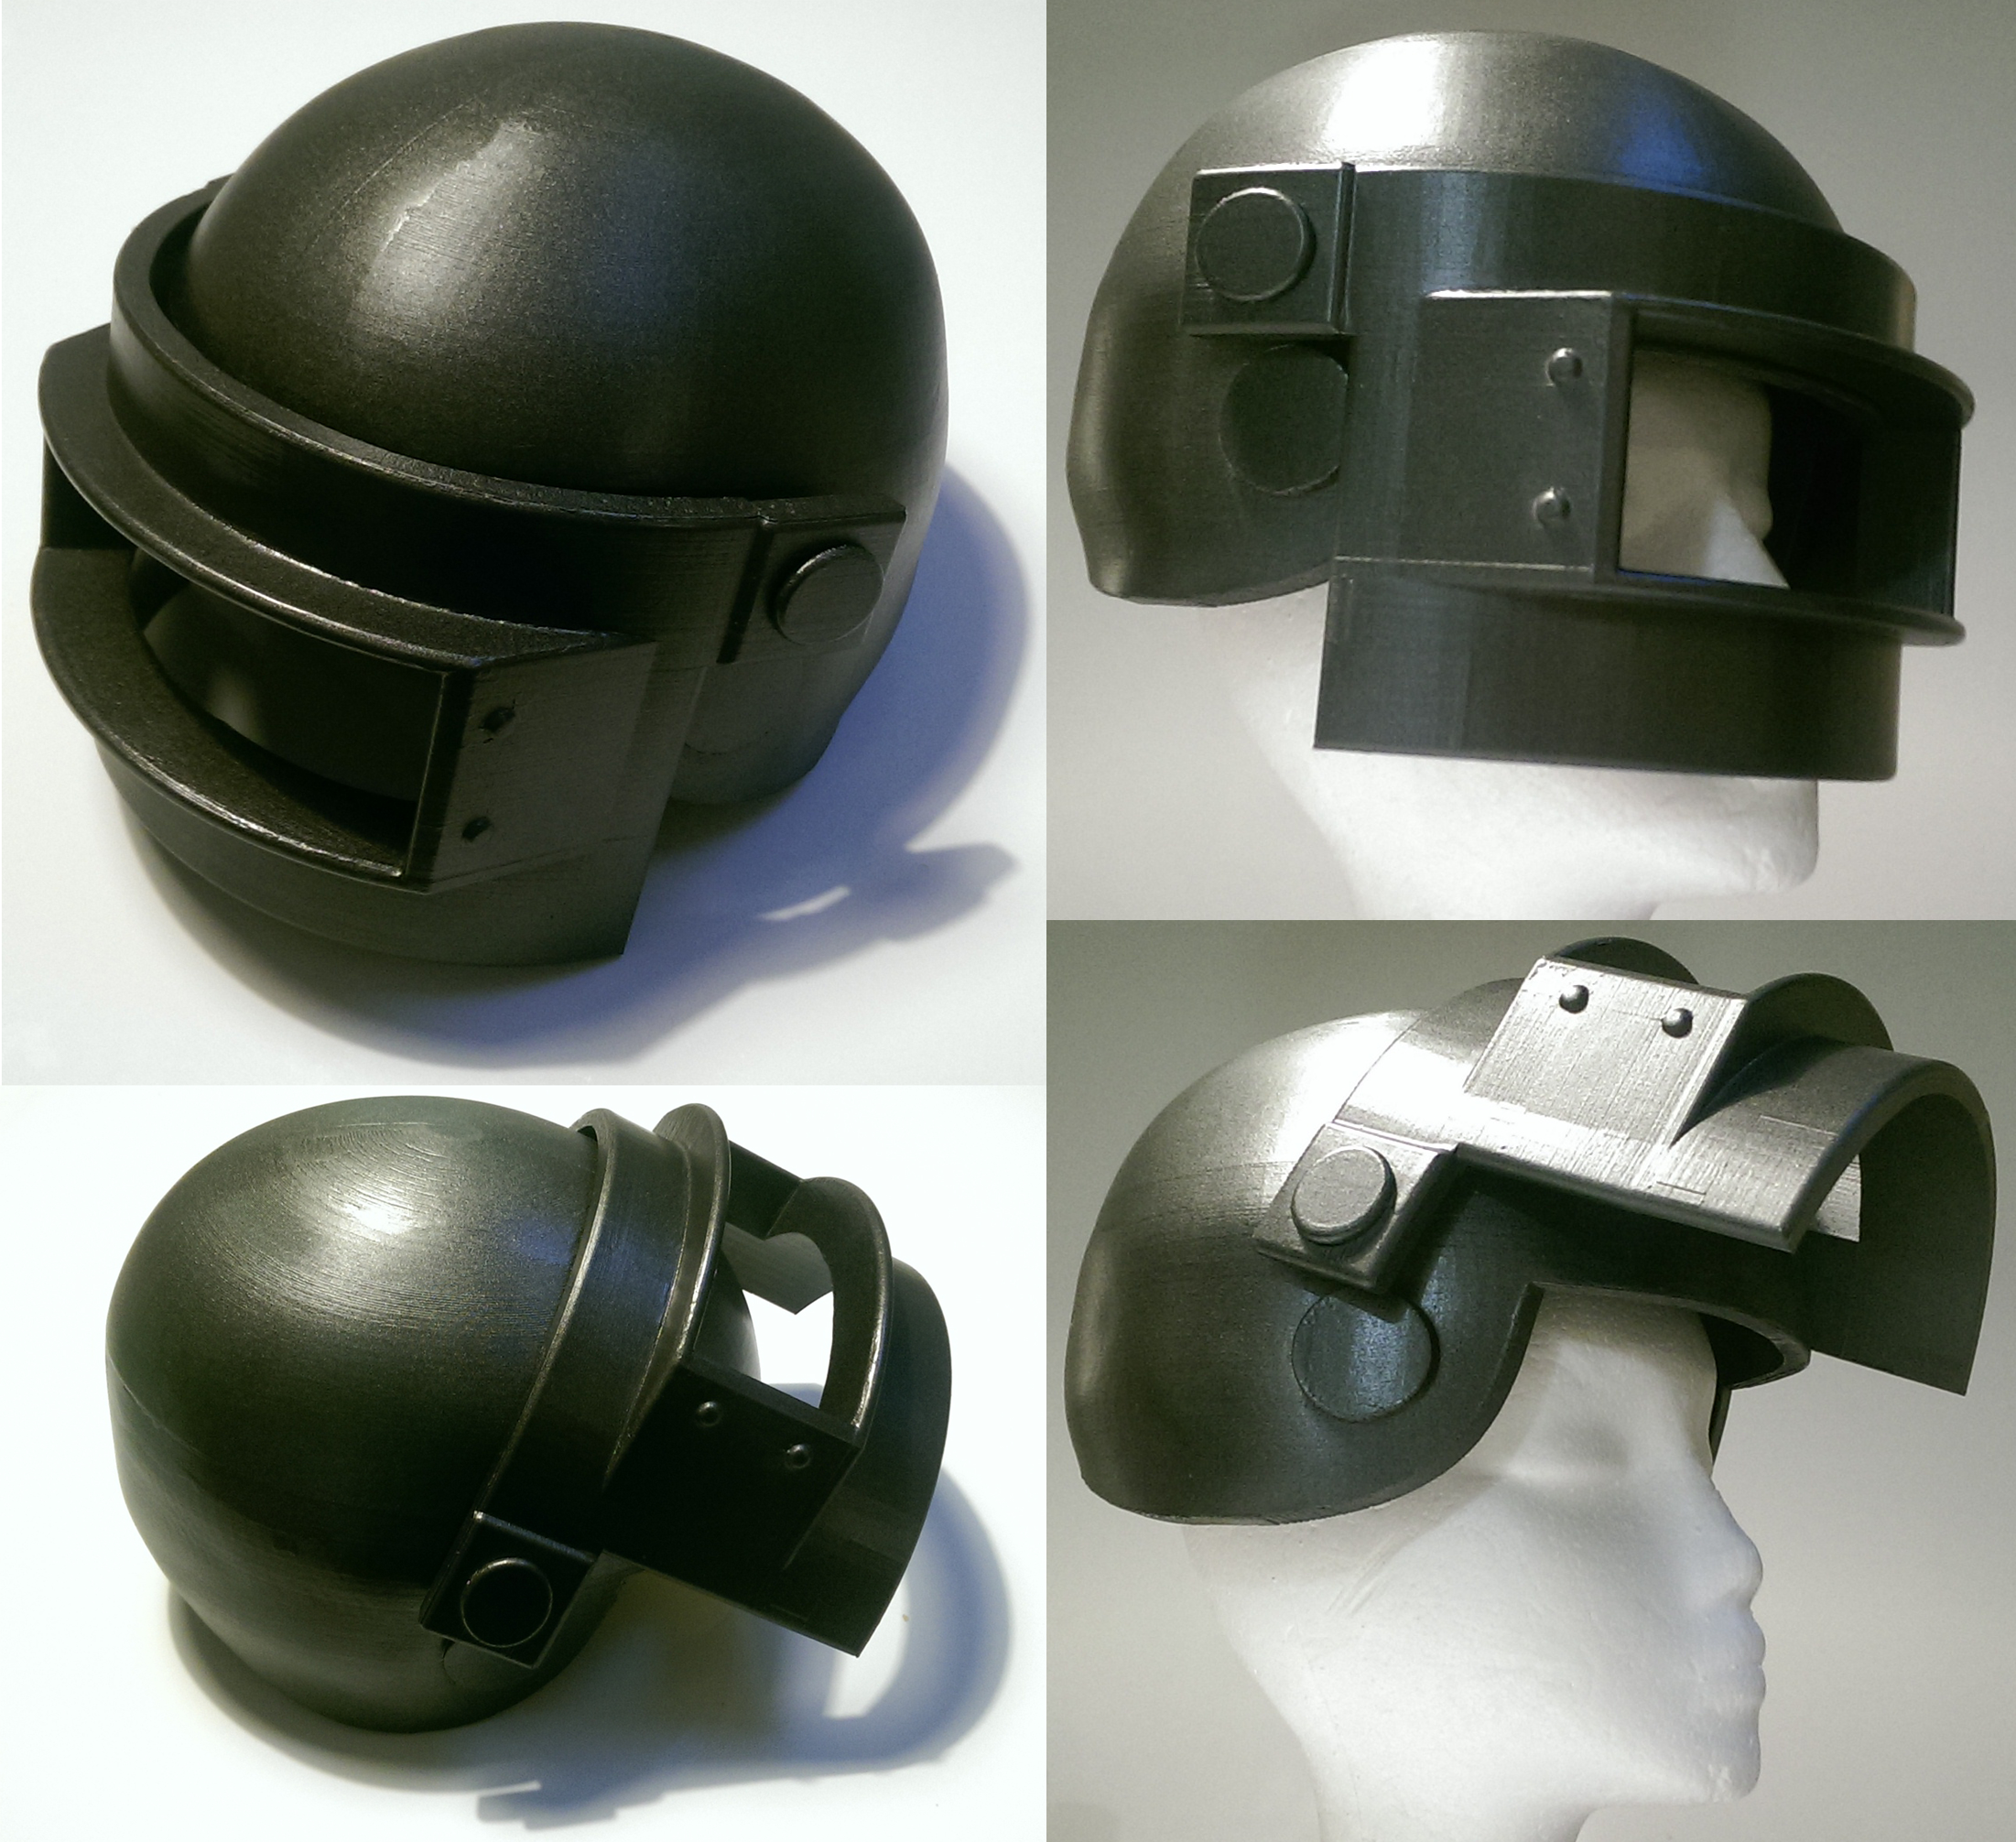 Russian K6-3 Tactical Helmet Replica ABS Game PUBG Helmet Level 3 Cosplay  Props